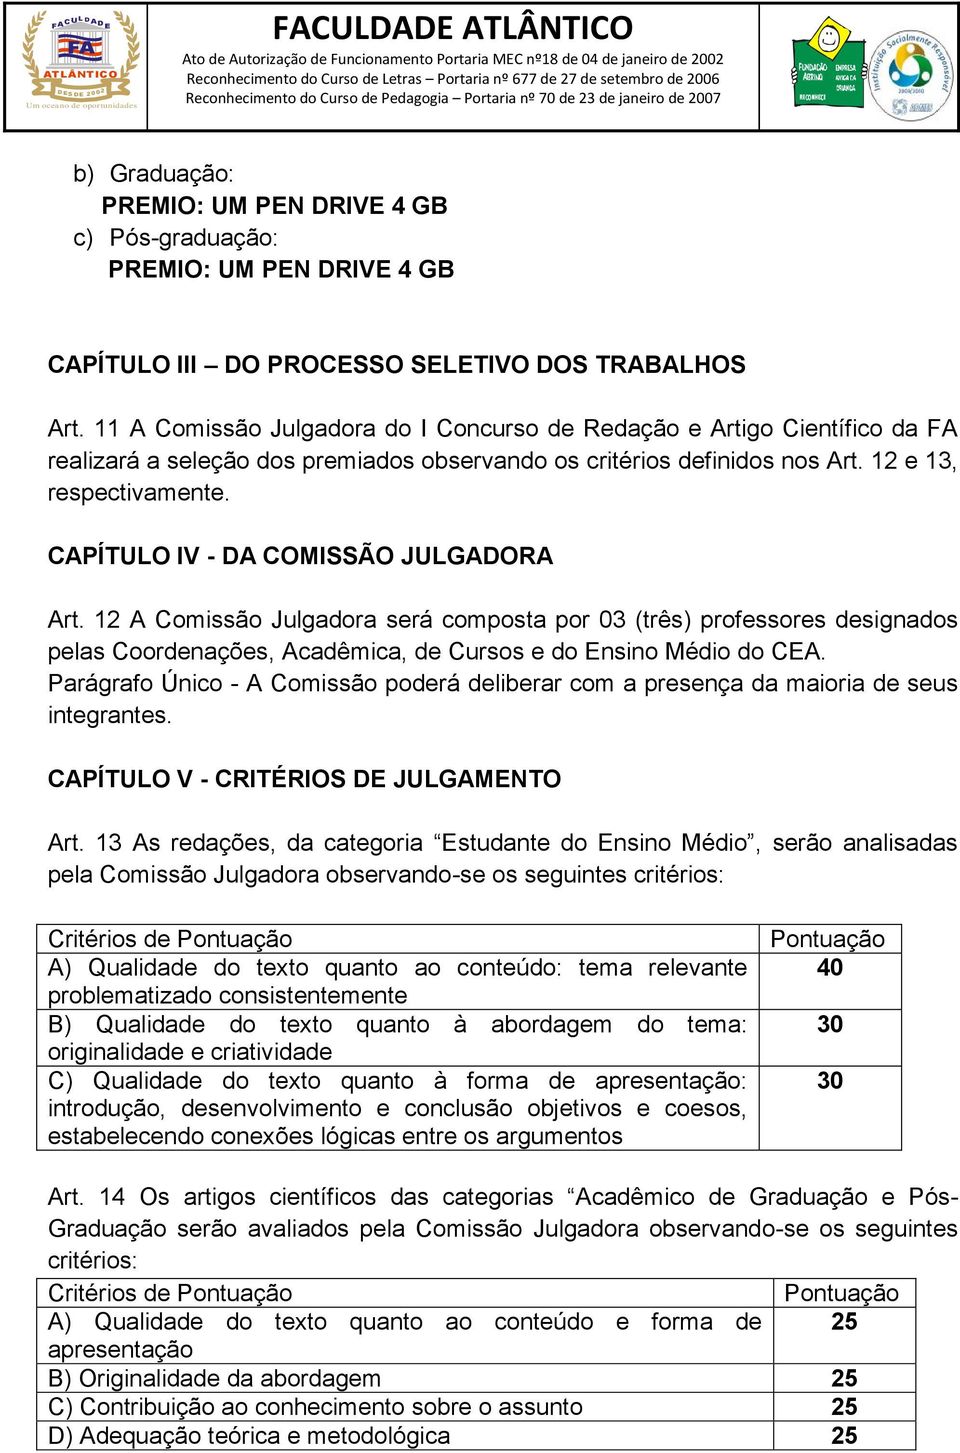 CAPÍTULO IV - DA COMISSÃO JULGADORA Art. 12 A Comissão Julgadora será composta por 03 (três) professores designados pelas Coordenações, Acadêmica, de Cursos e do Ensino Médio do CEA.